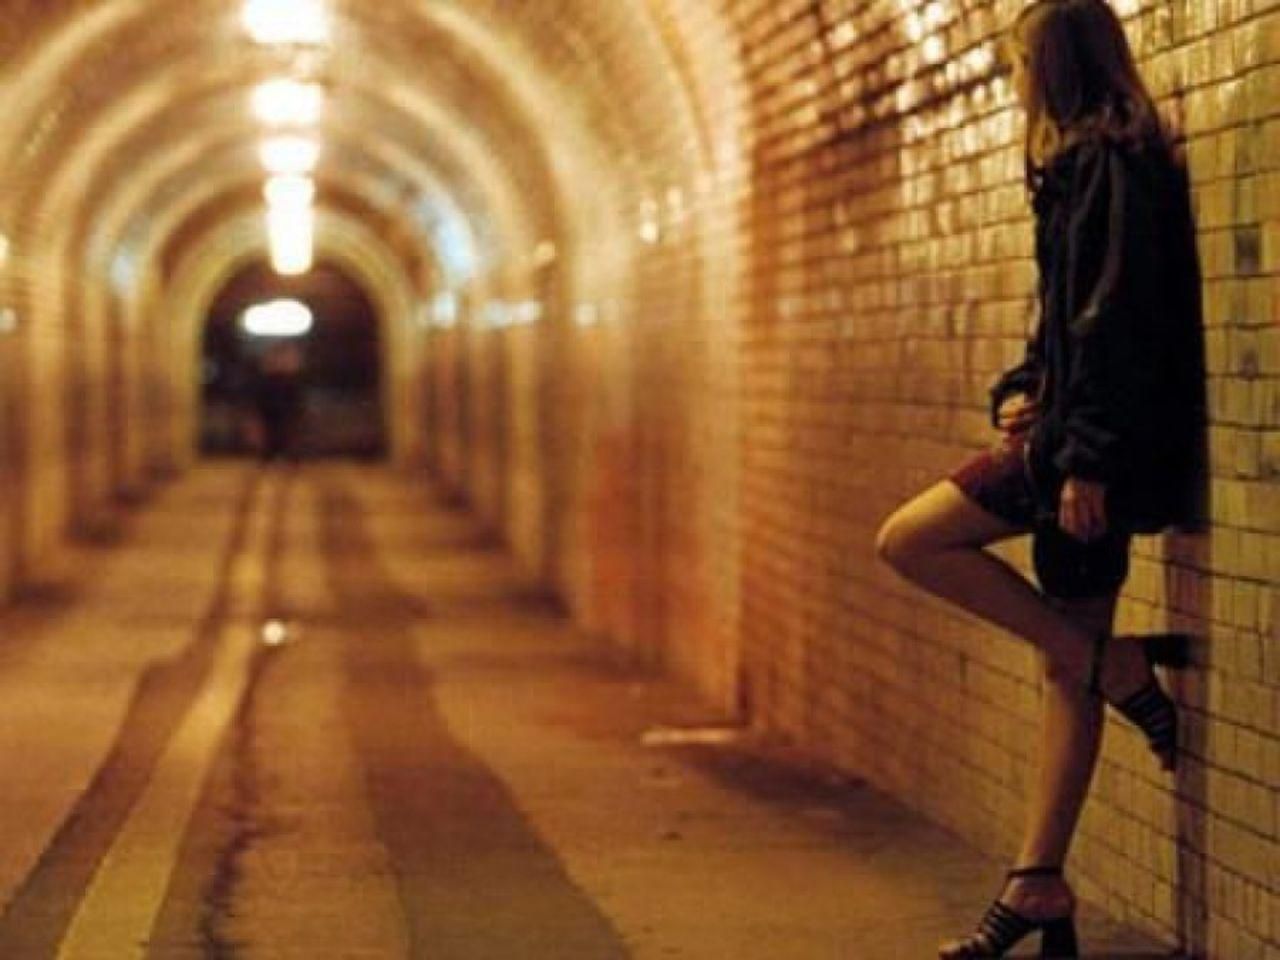 ЦРУ: Сколько в сутки зарабатывает украинская проститутка?